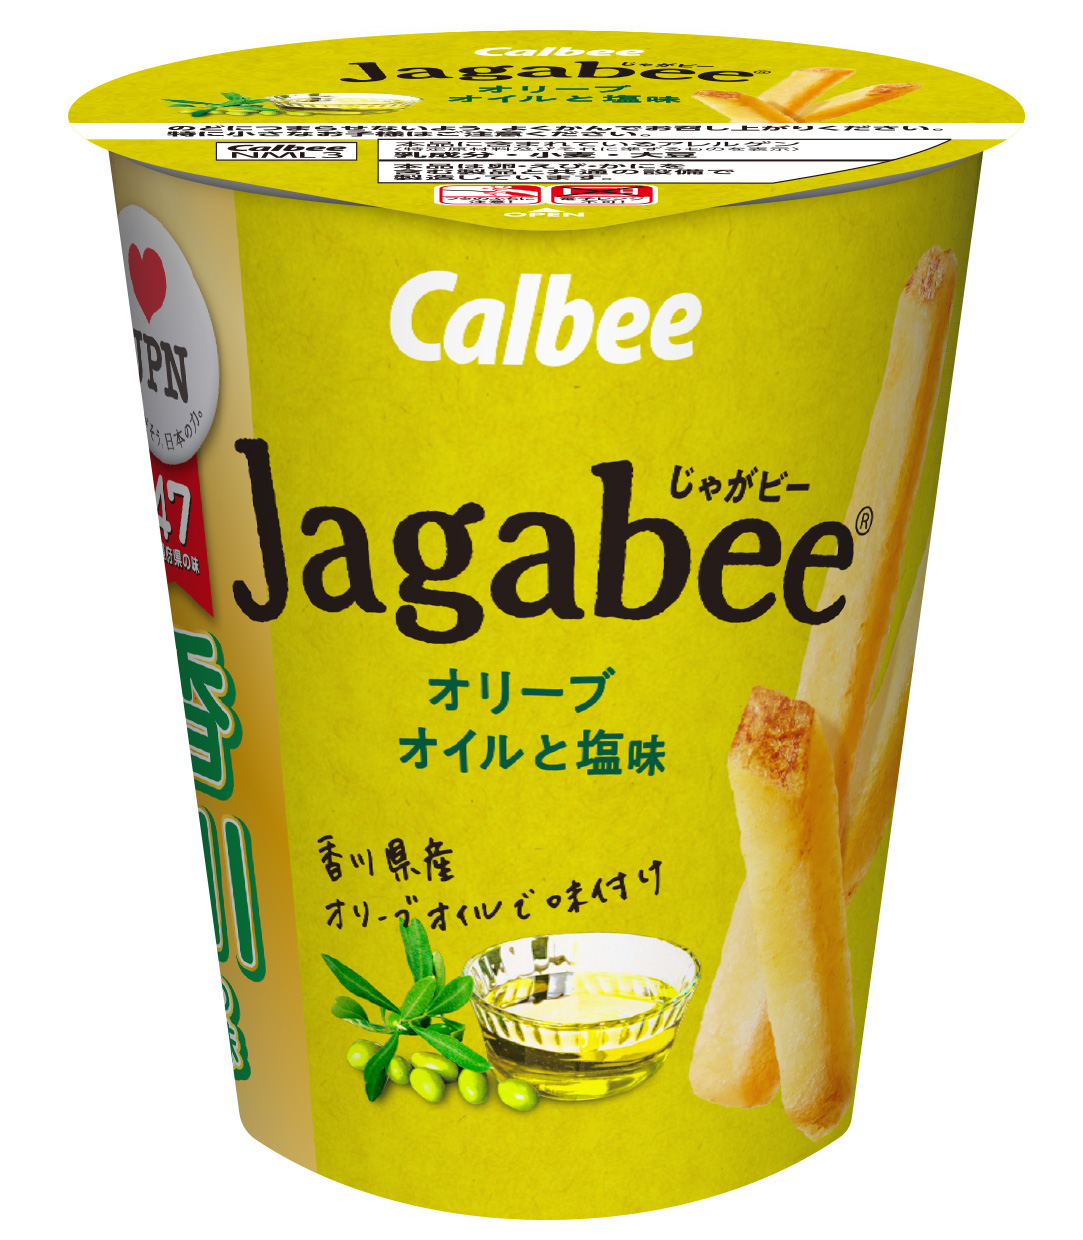 香川の味 Jagabee オリーブオイルと塩味 7月6日 月 発売 香川県産オリーブオイルの香り豊かで爽やかな味わいをお楽しみください カルビー株式会社のプレスリリース